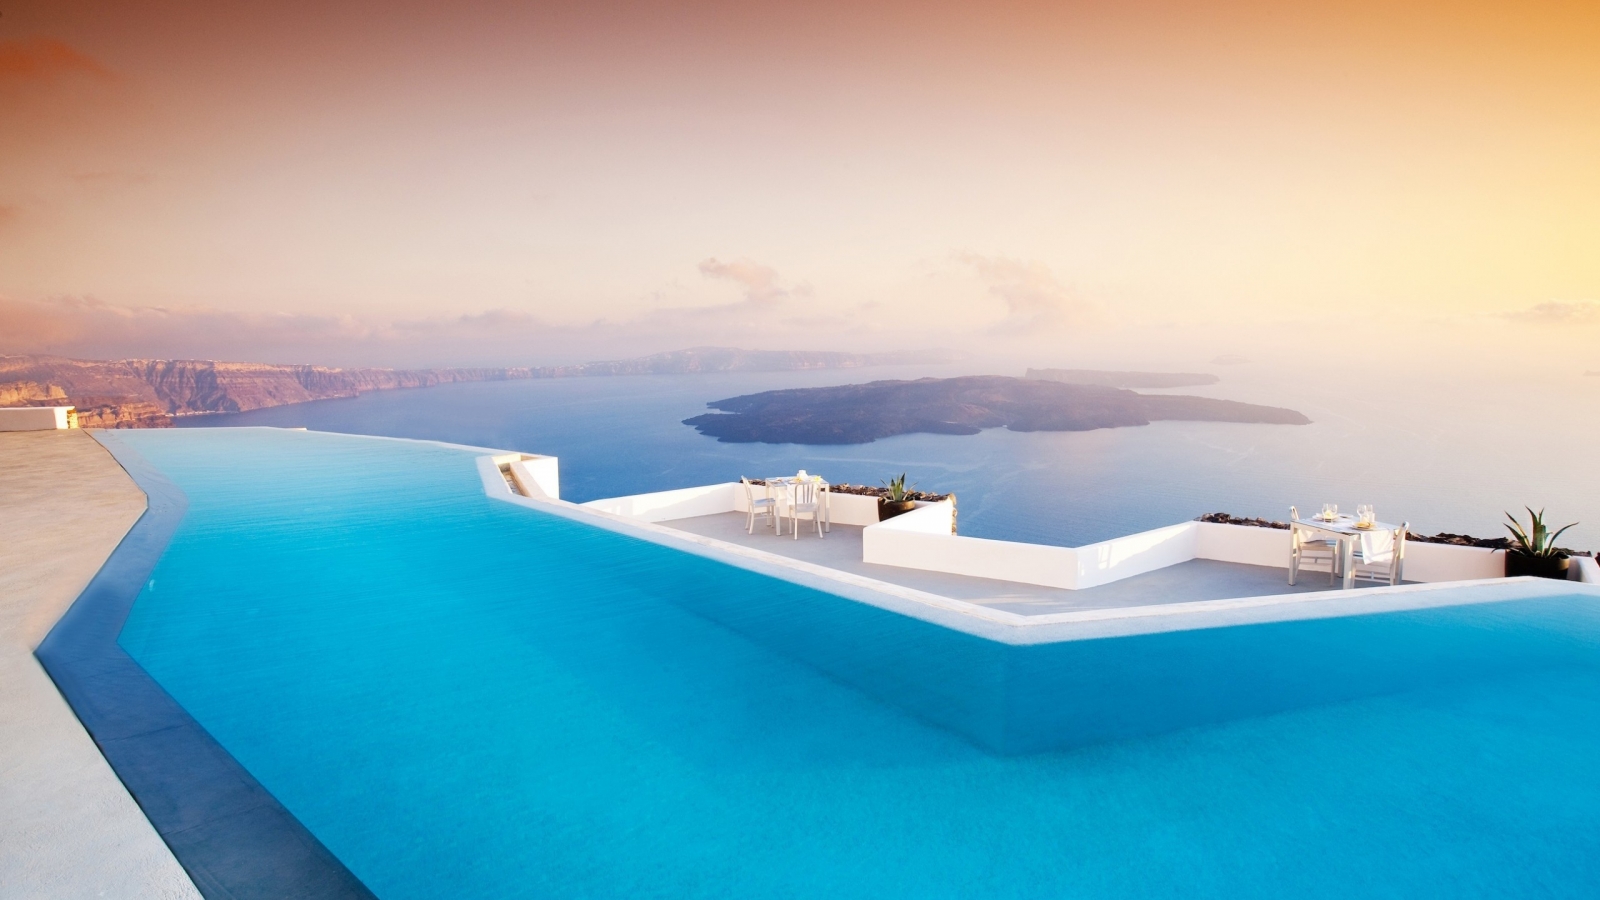 Santorini Pool for 1600 x 900 HDTV resolution